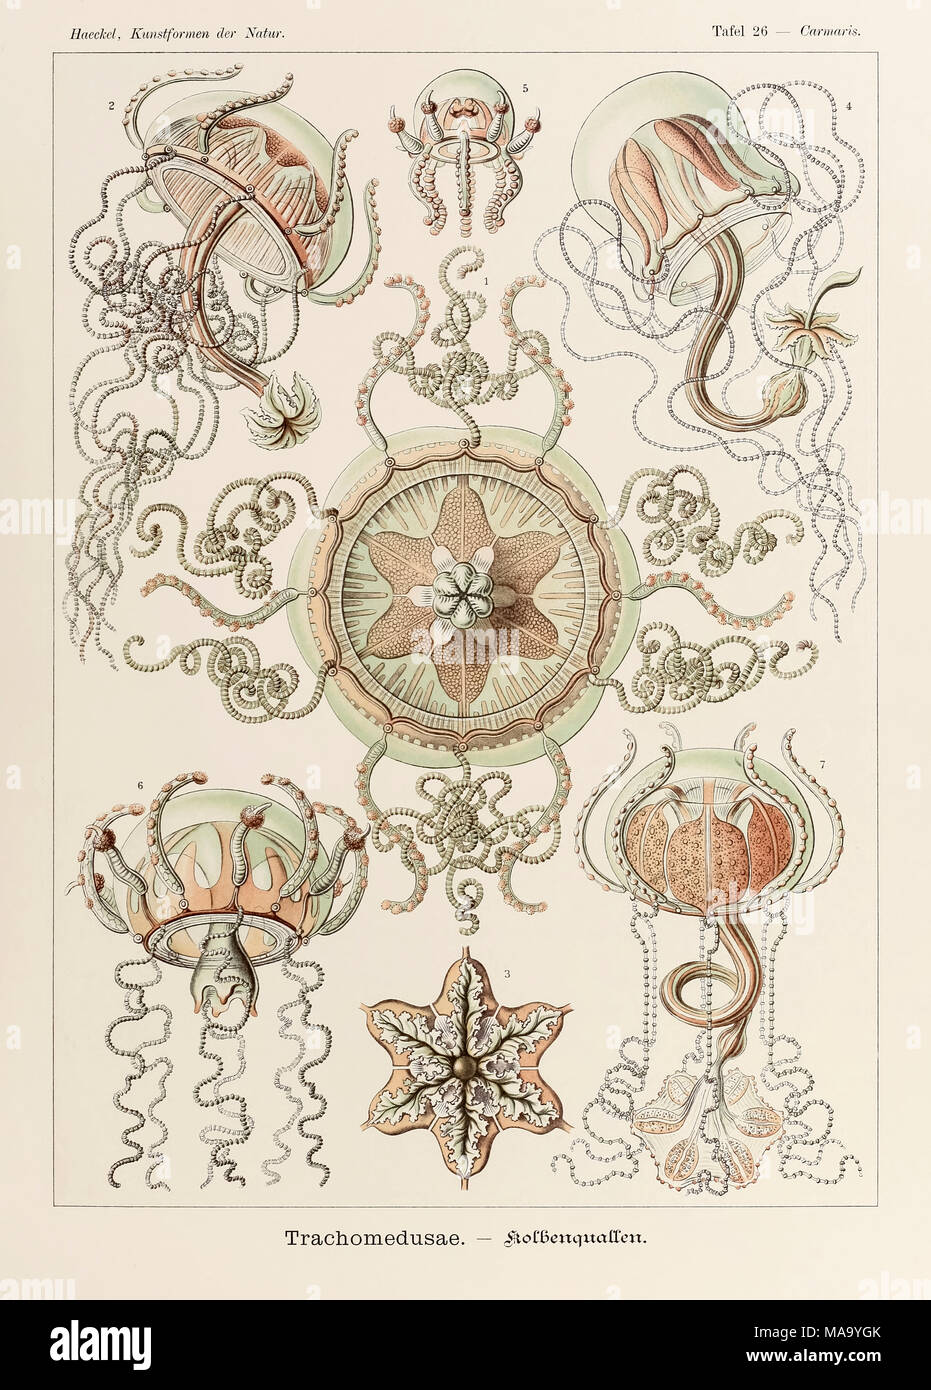 26 Carmaris Trachomedusae placa de "Kunstformen der Natur" (formas artísticas en la naturaleza), ilustrado por Ernst Haeckel (1834-1919). Ver más información a continuación. Foto de stock